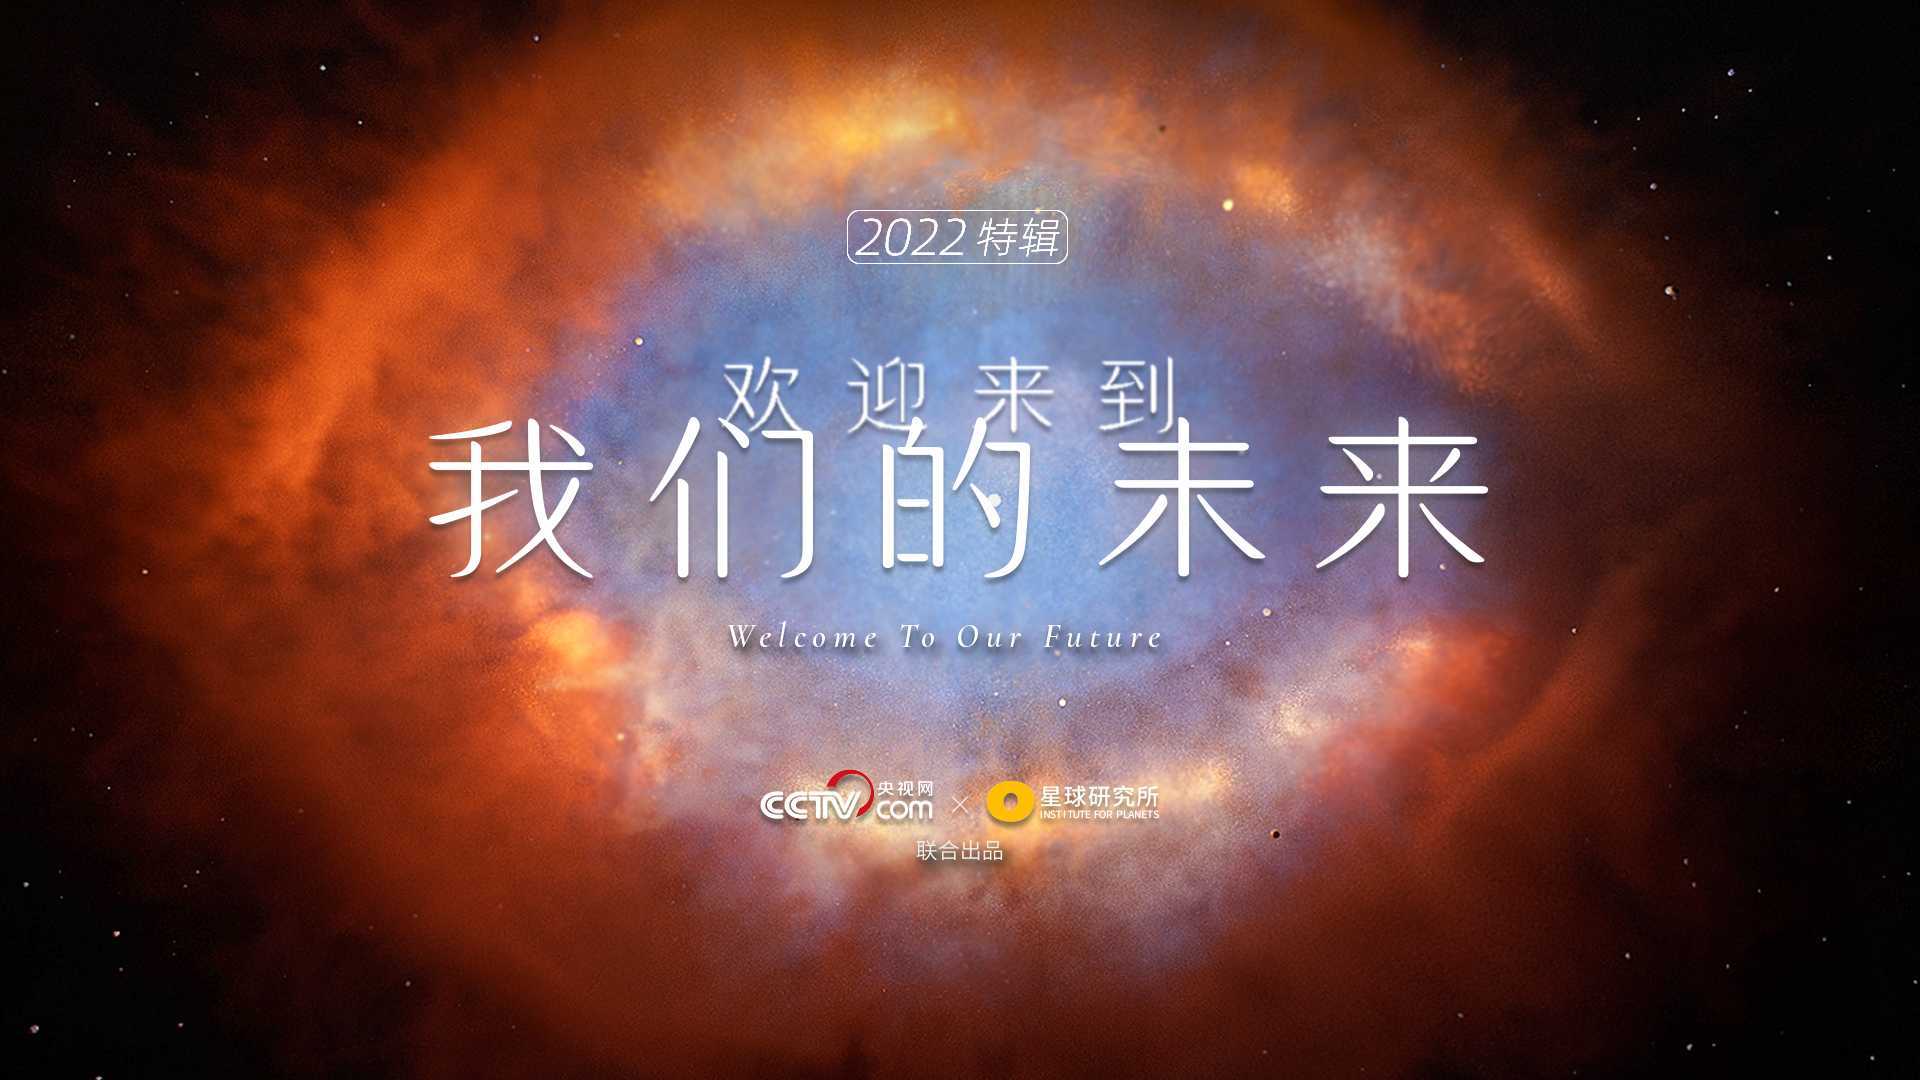 【2022特辑】欢迎来到我们的未来（央视网 x 星球研究所）